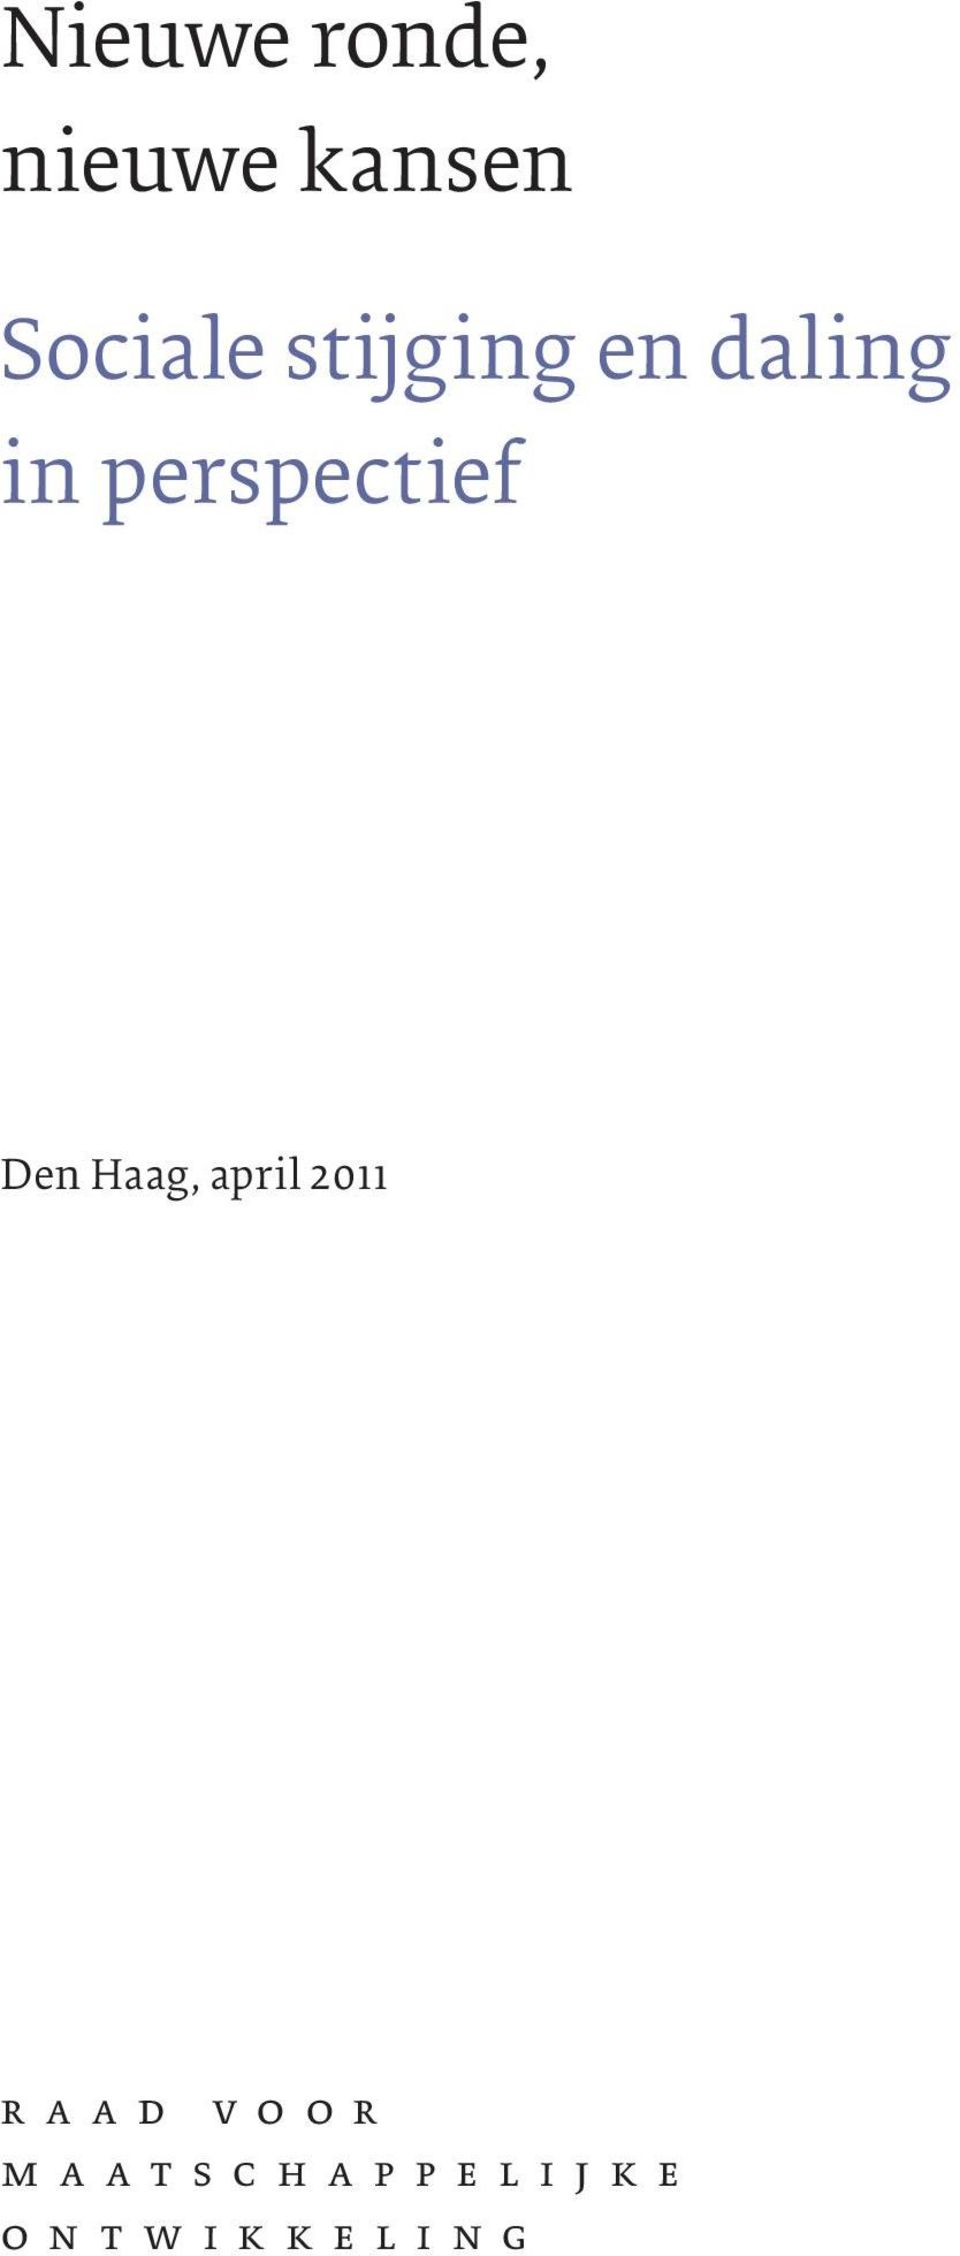 Den Haag, april 2011 raad voor